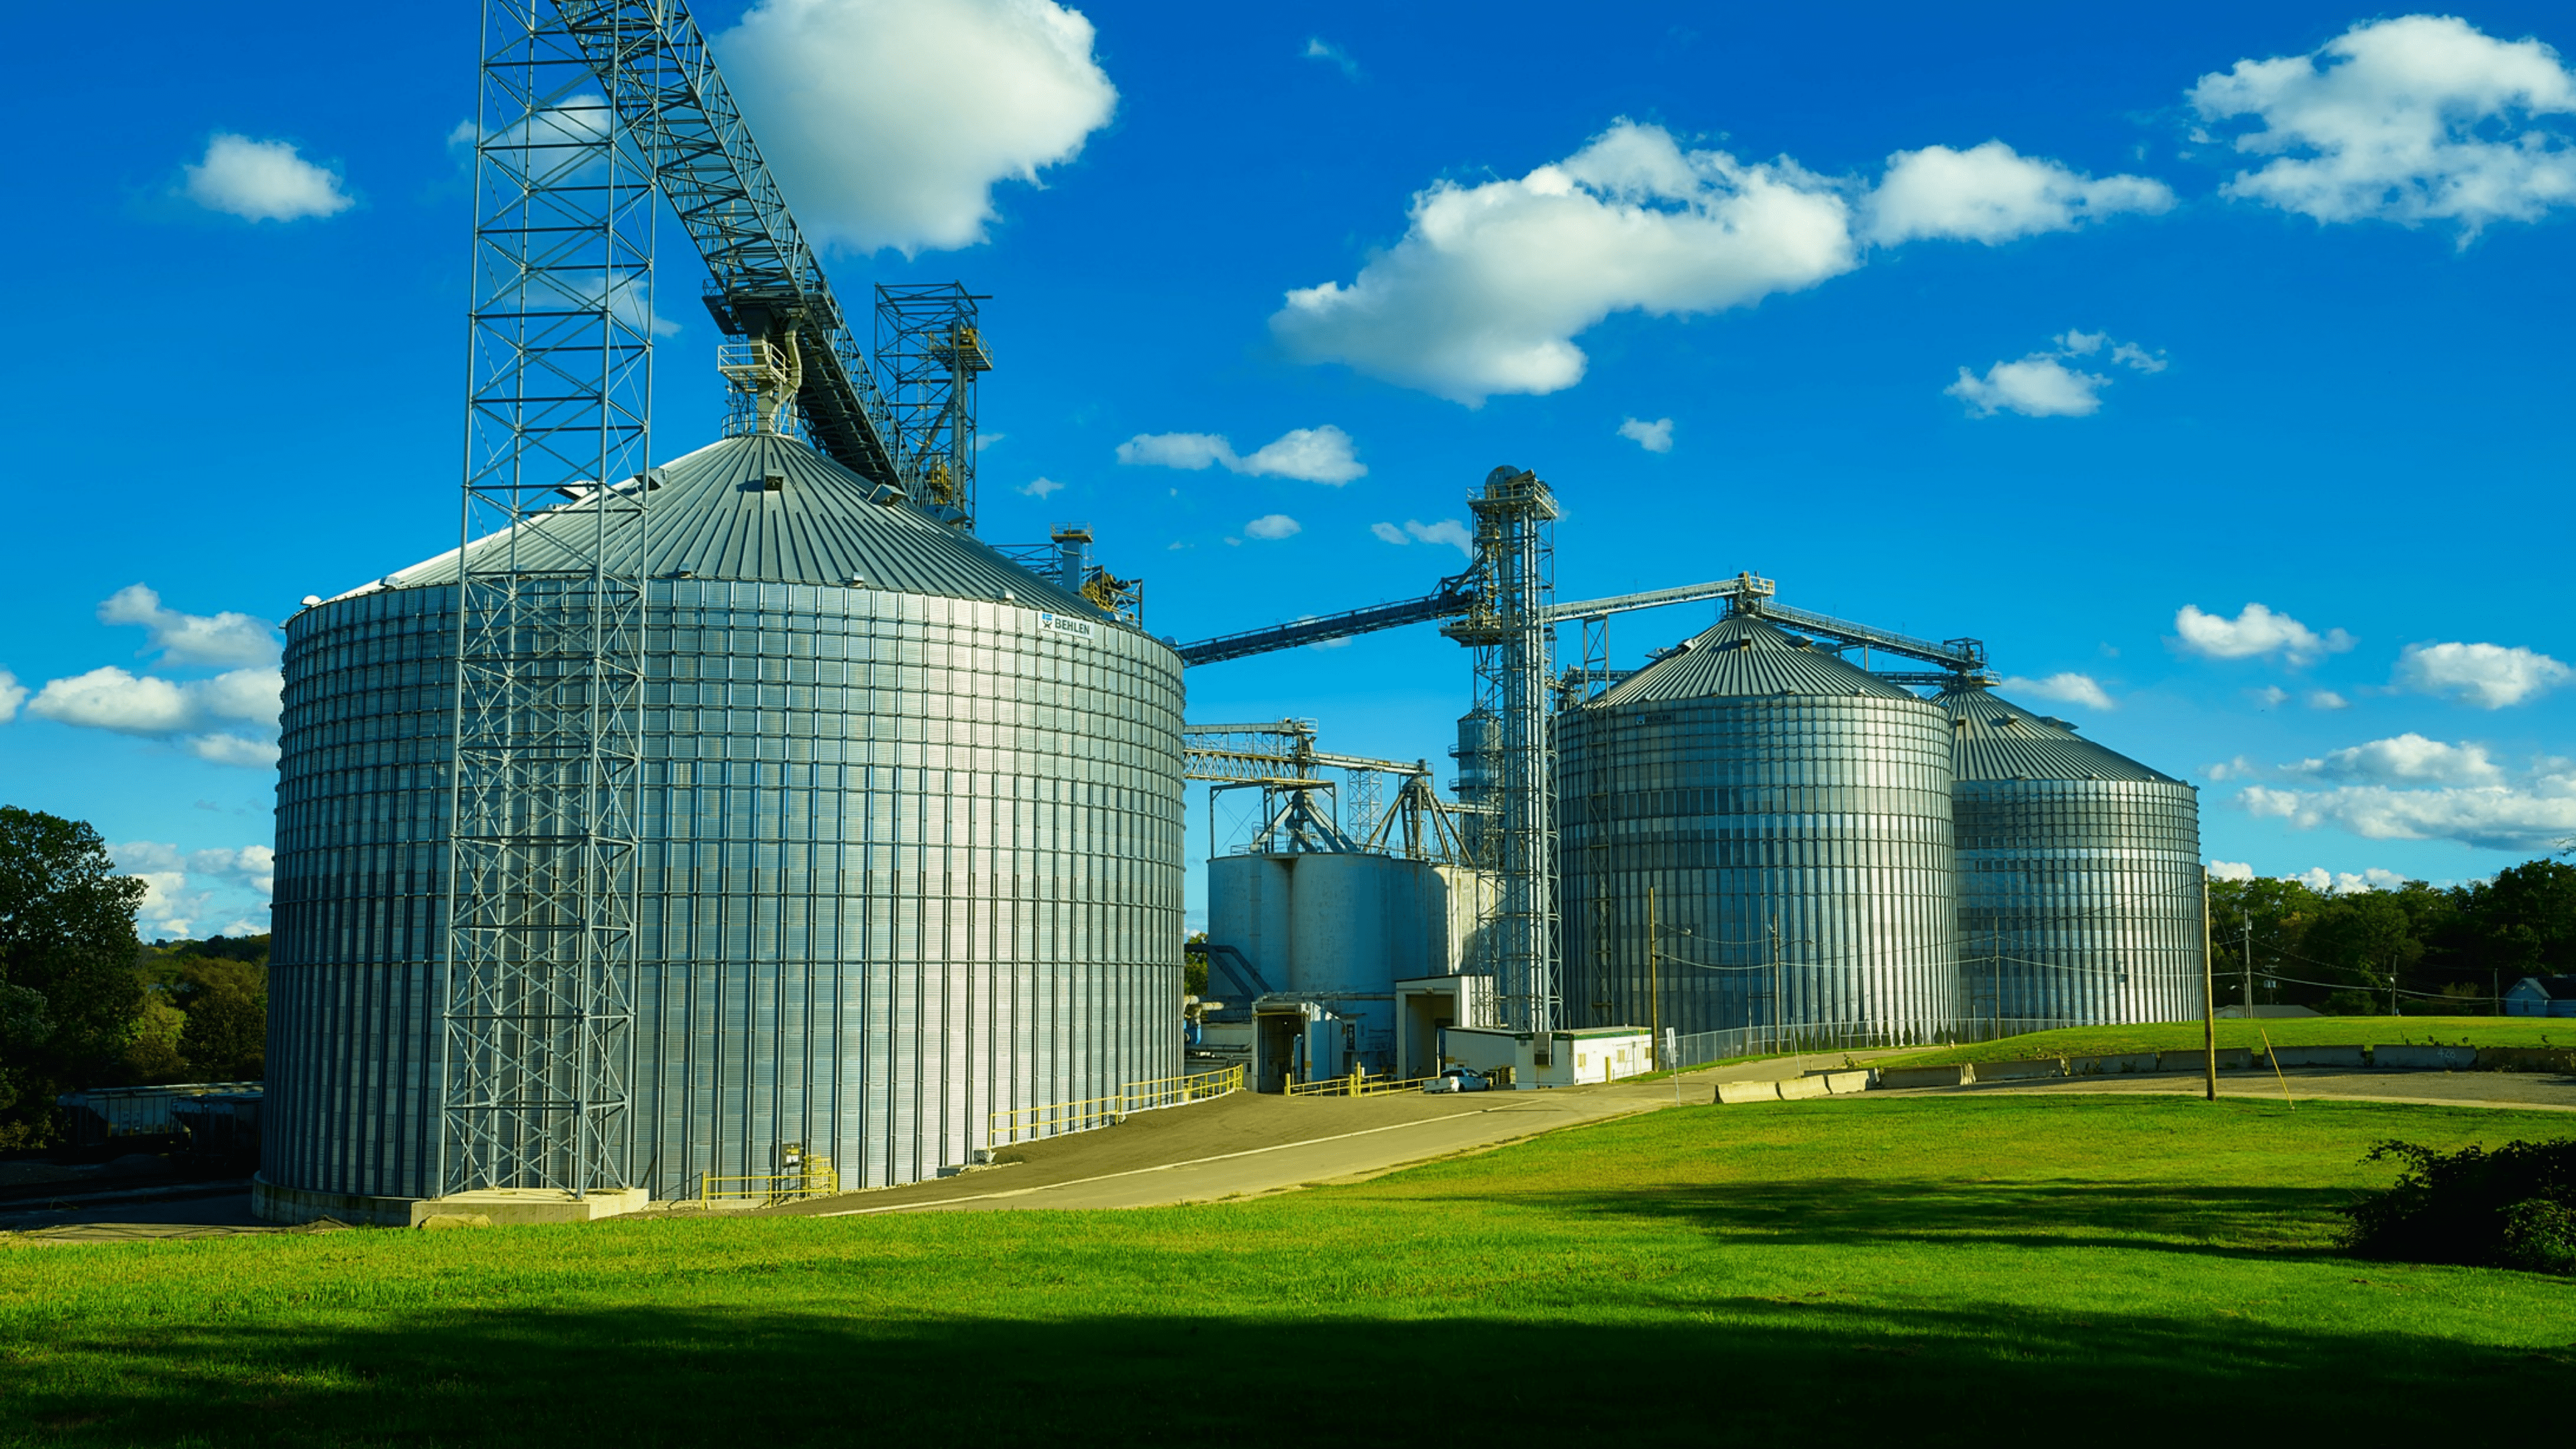 Ohio Grain silo